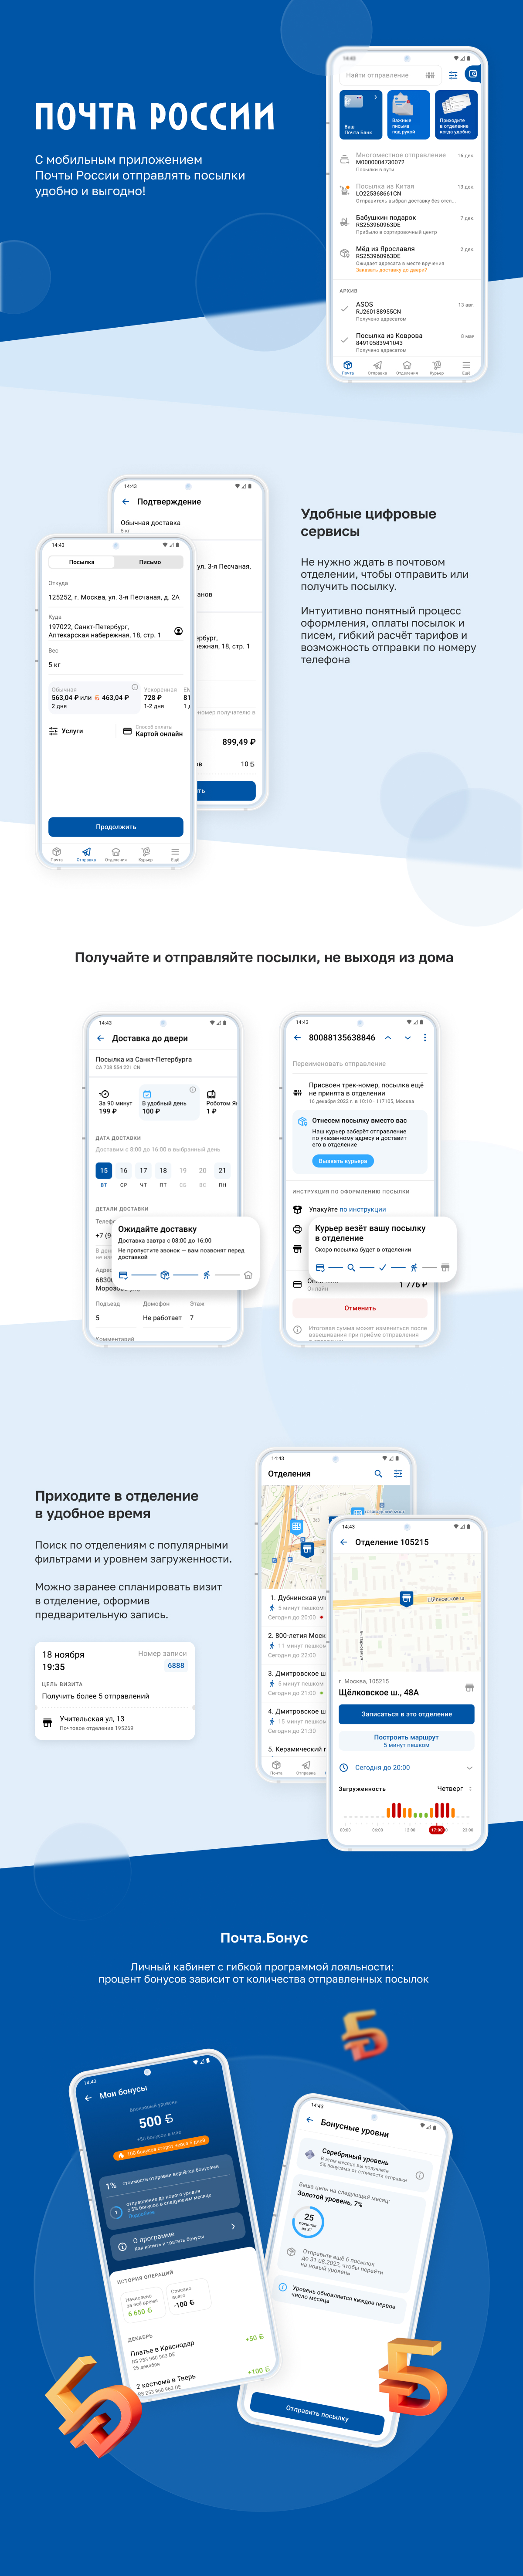 Мобильное приложение Почты России